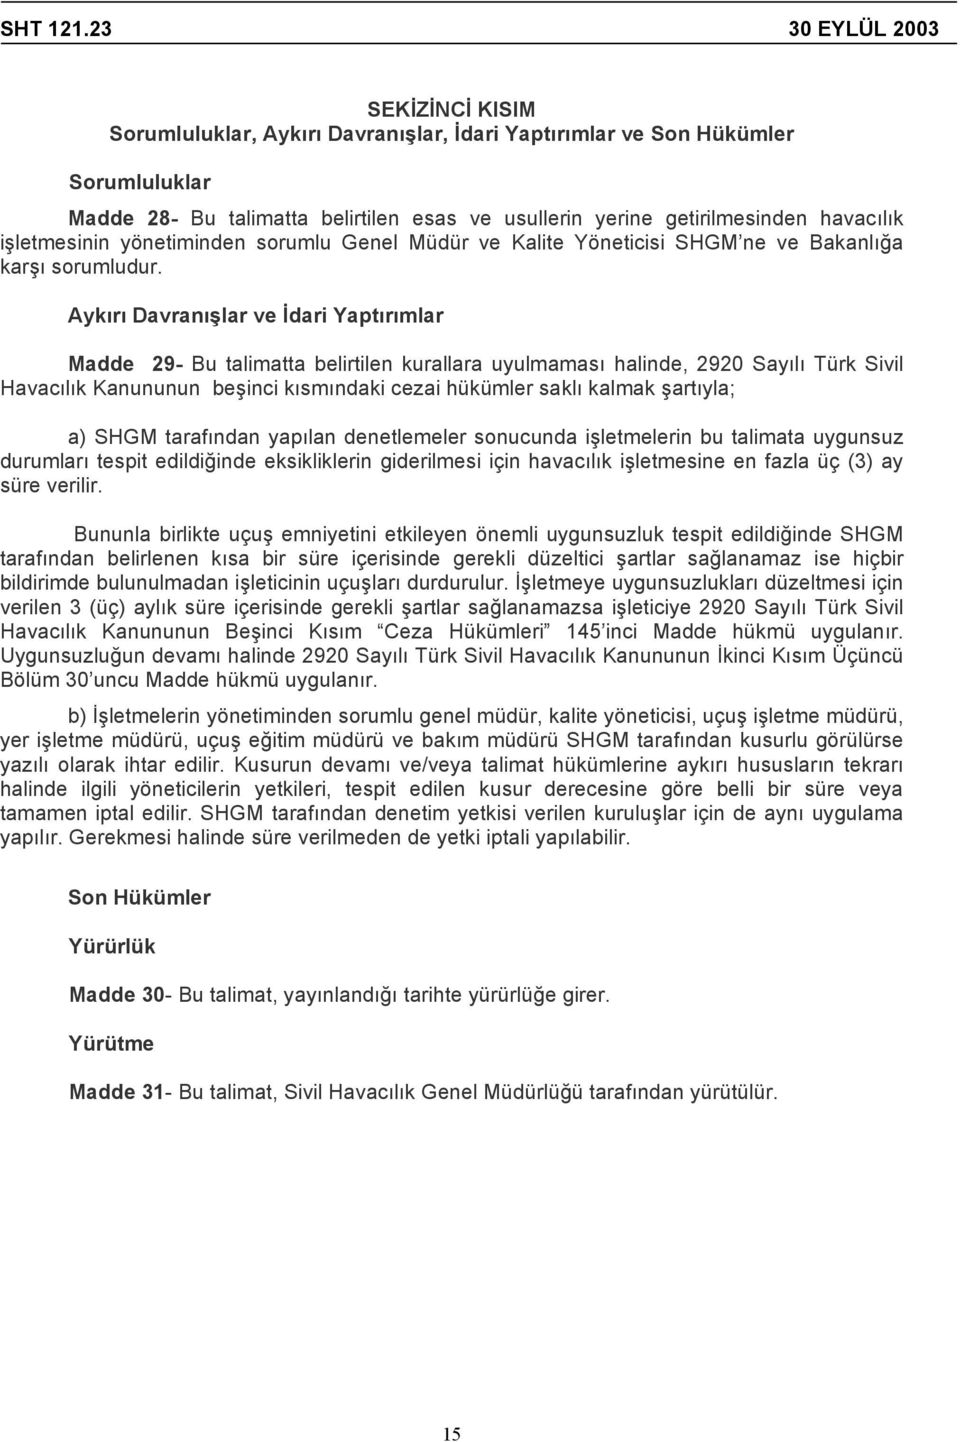 Aykırı Davranışlar ve İdari Yaptırımlar Madde 29- Bu talimatta belirtilen kurallara uyulmaması halinde, 2920 Sayılı Türk Sivil Havacılık Kanununun beşinci kısmındaki cezai hükümler saklı kalmak